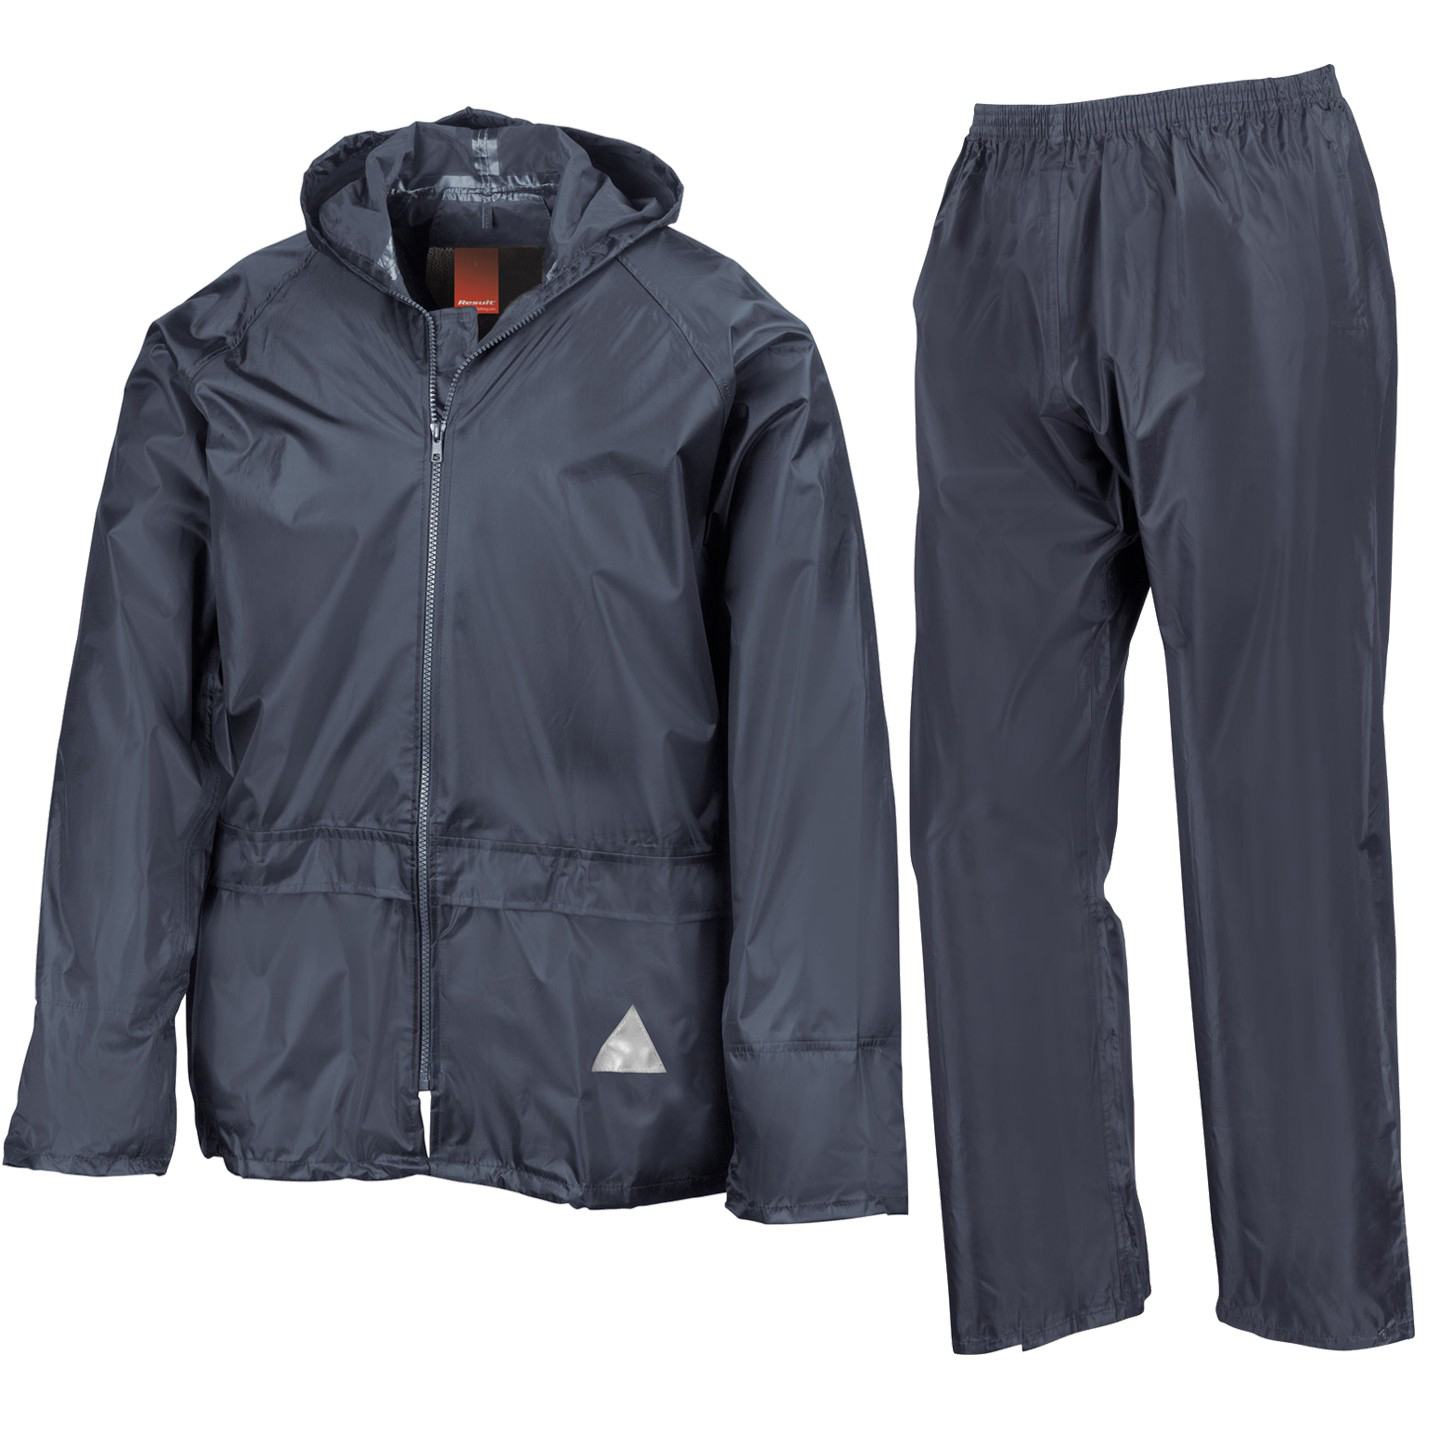 Result Waterproof Jacket/Trouser Set R095X